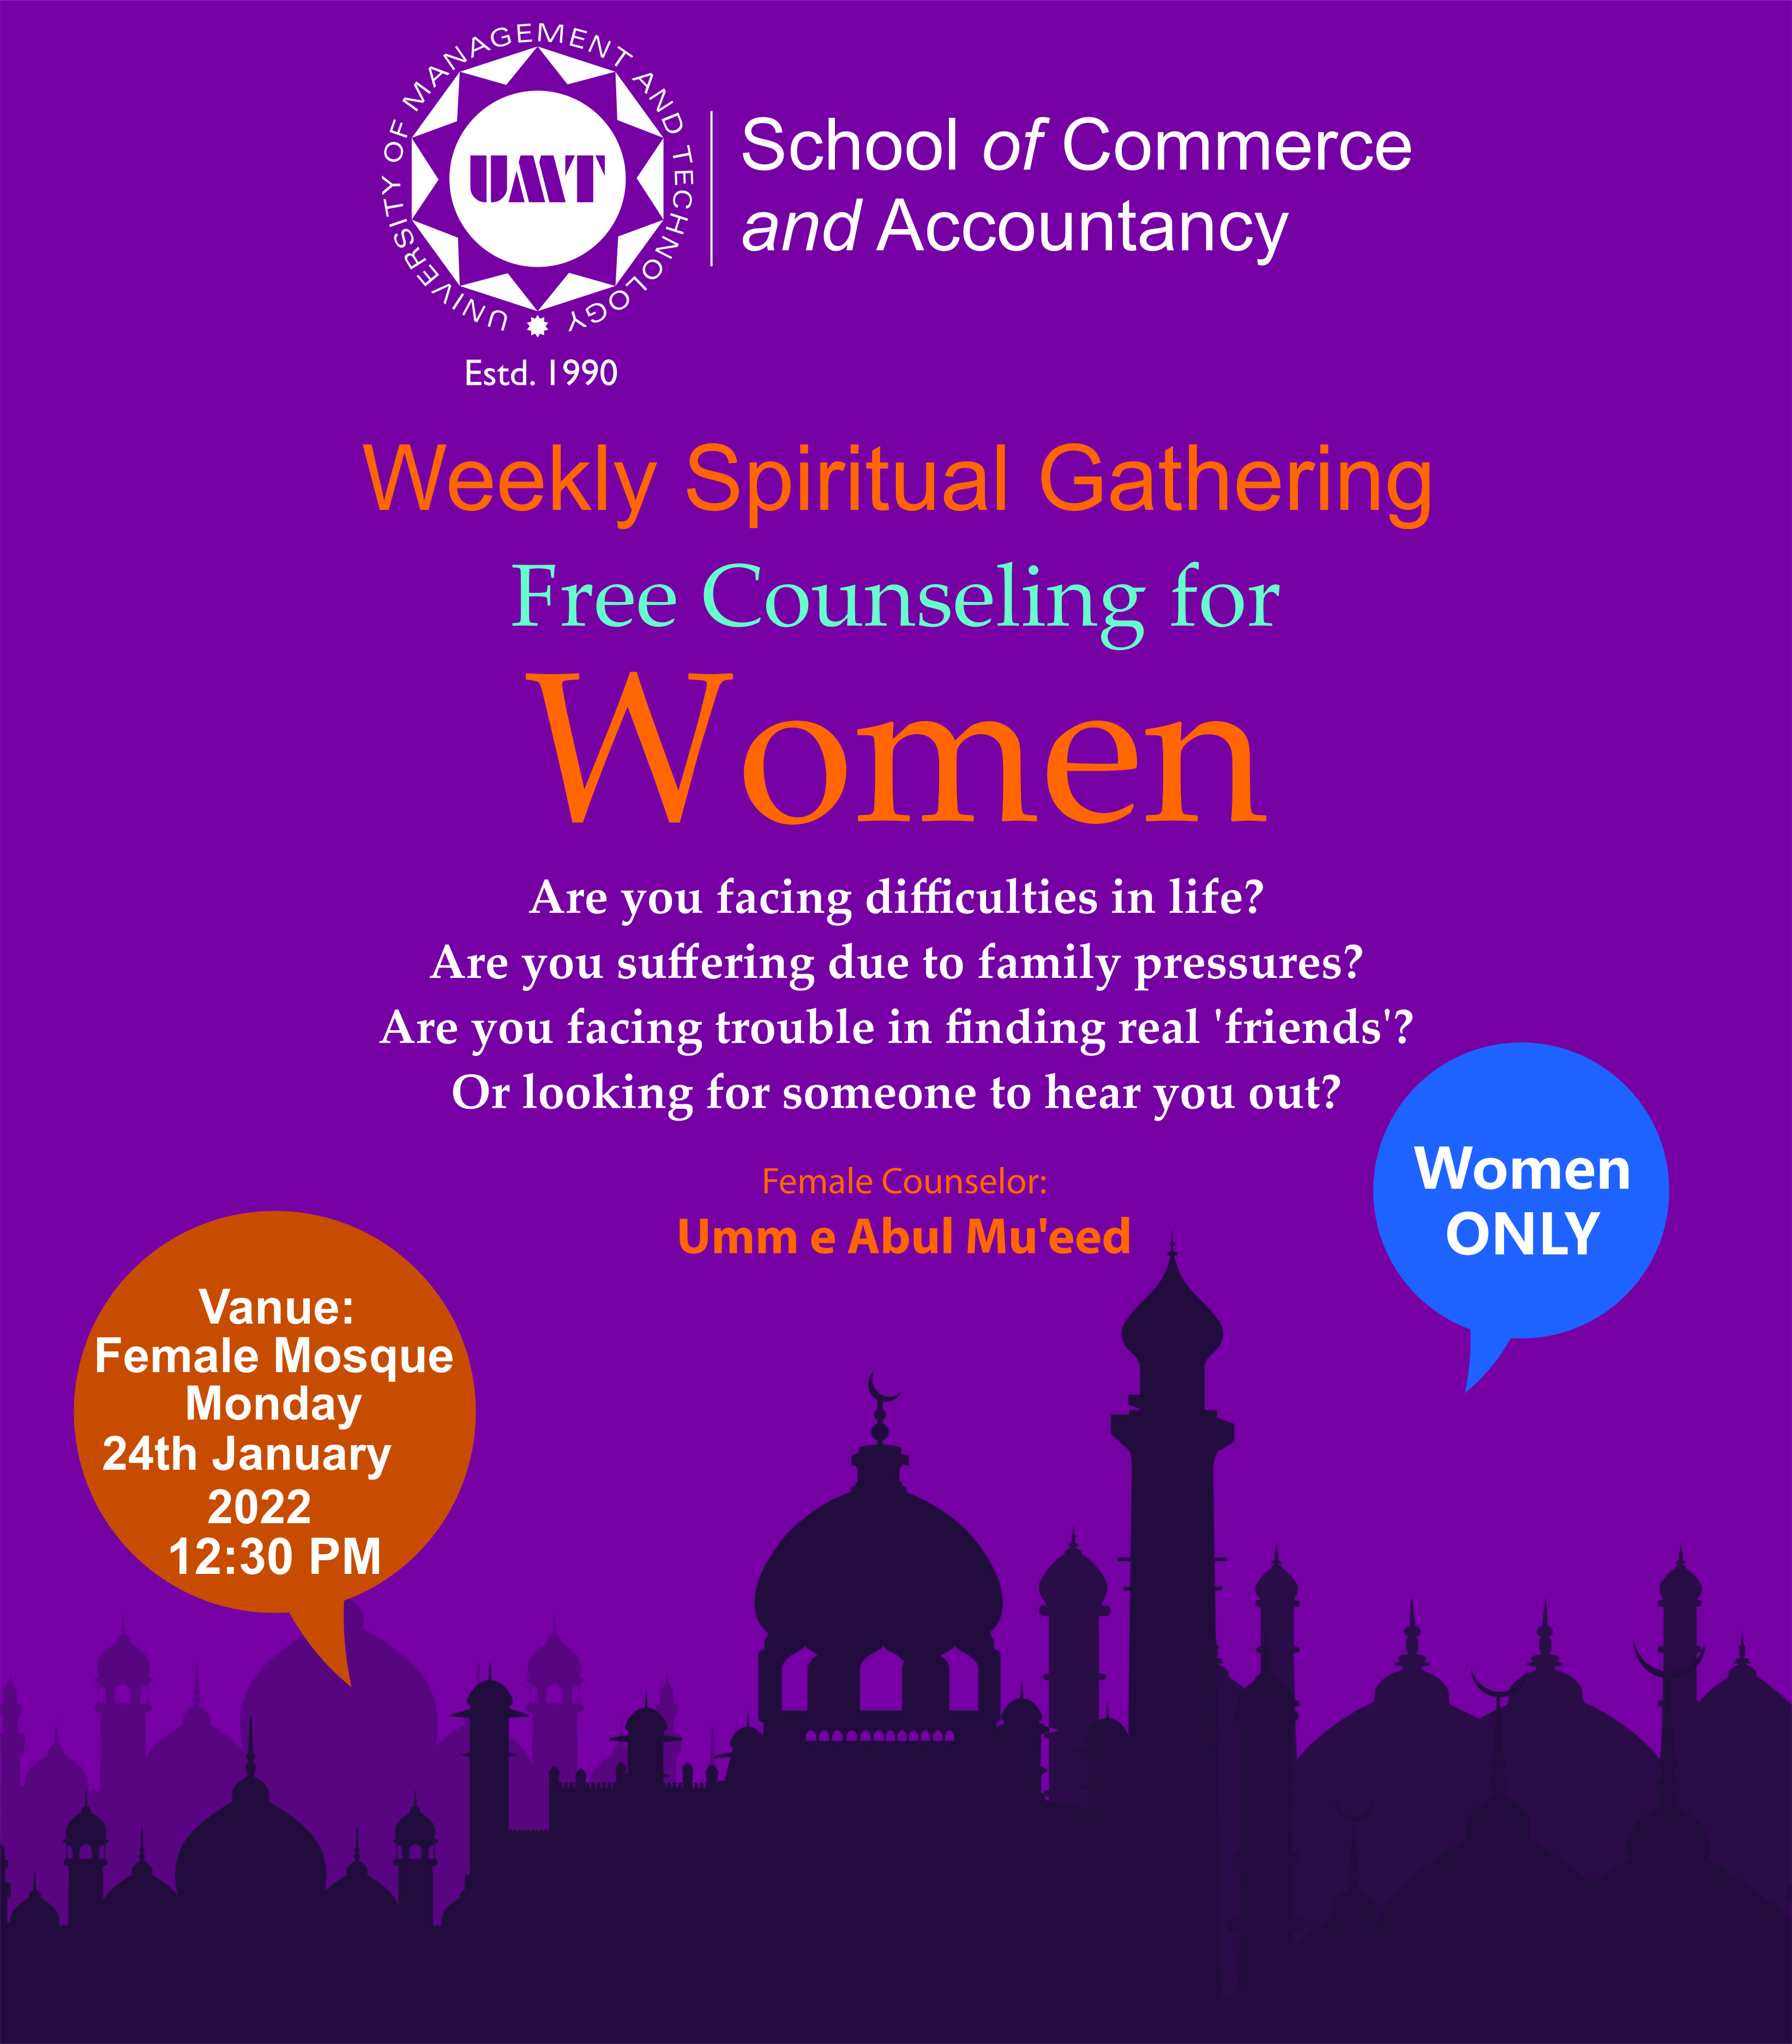 Weekly Spiritual Gathering for Women